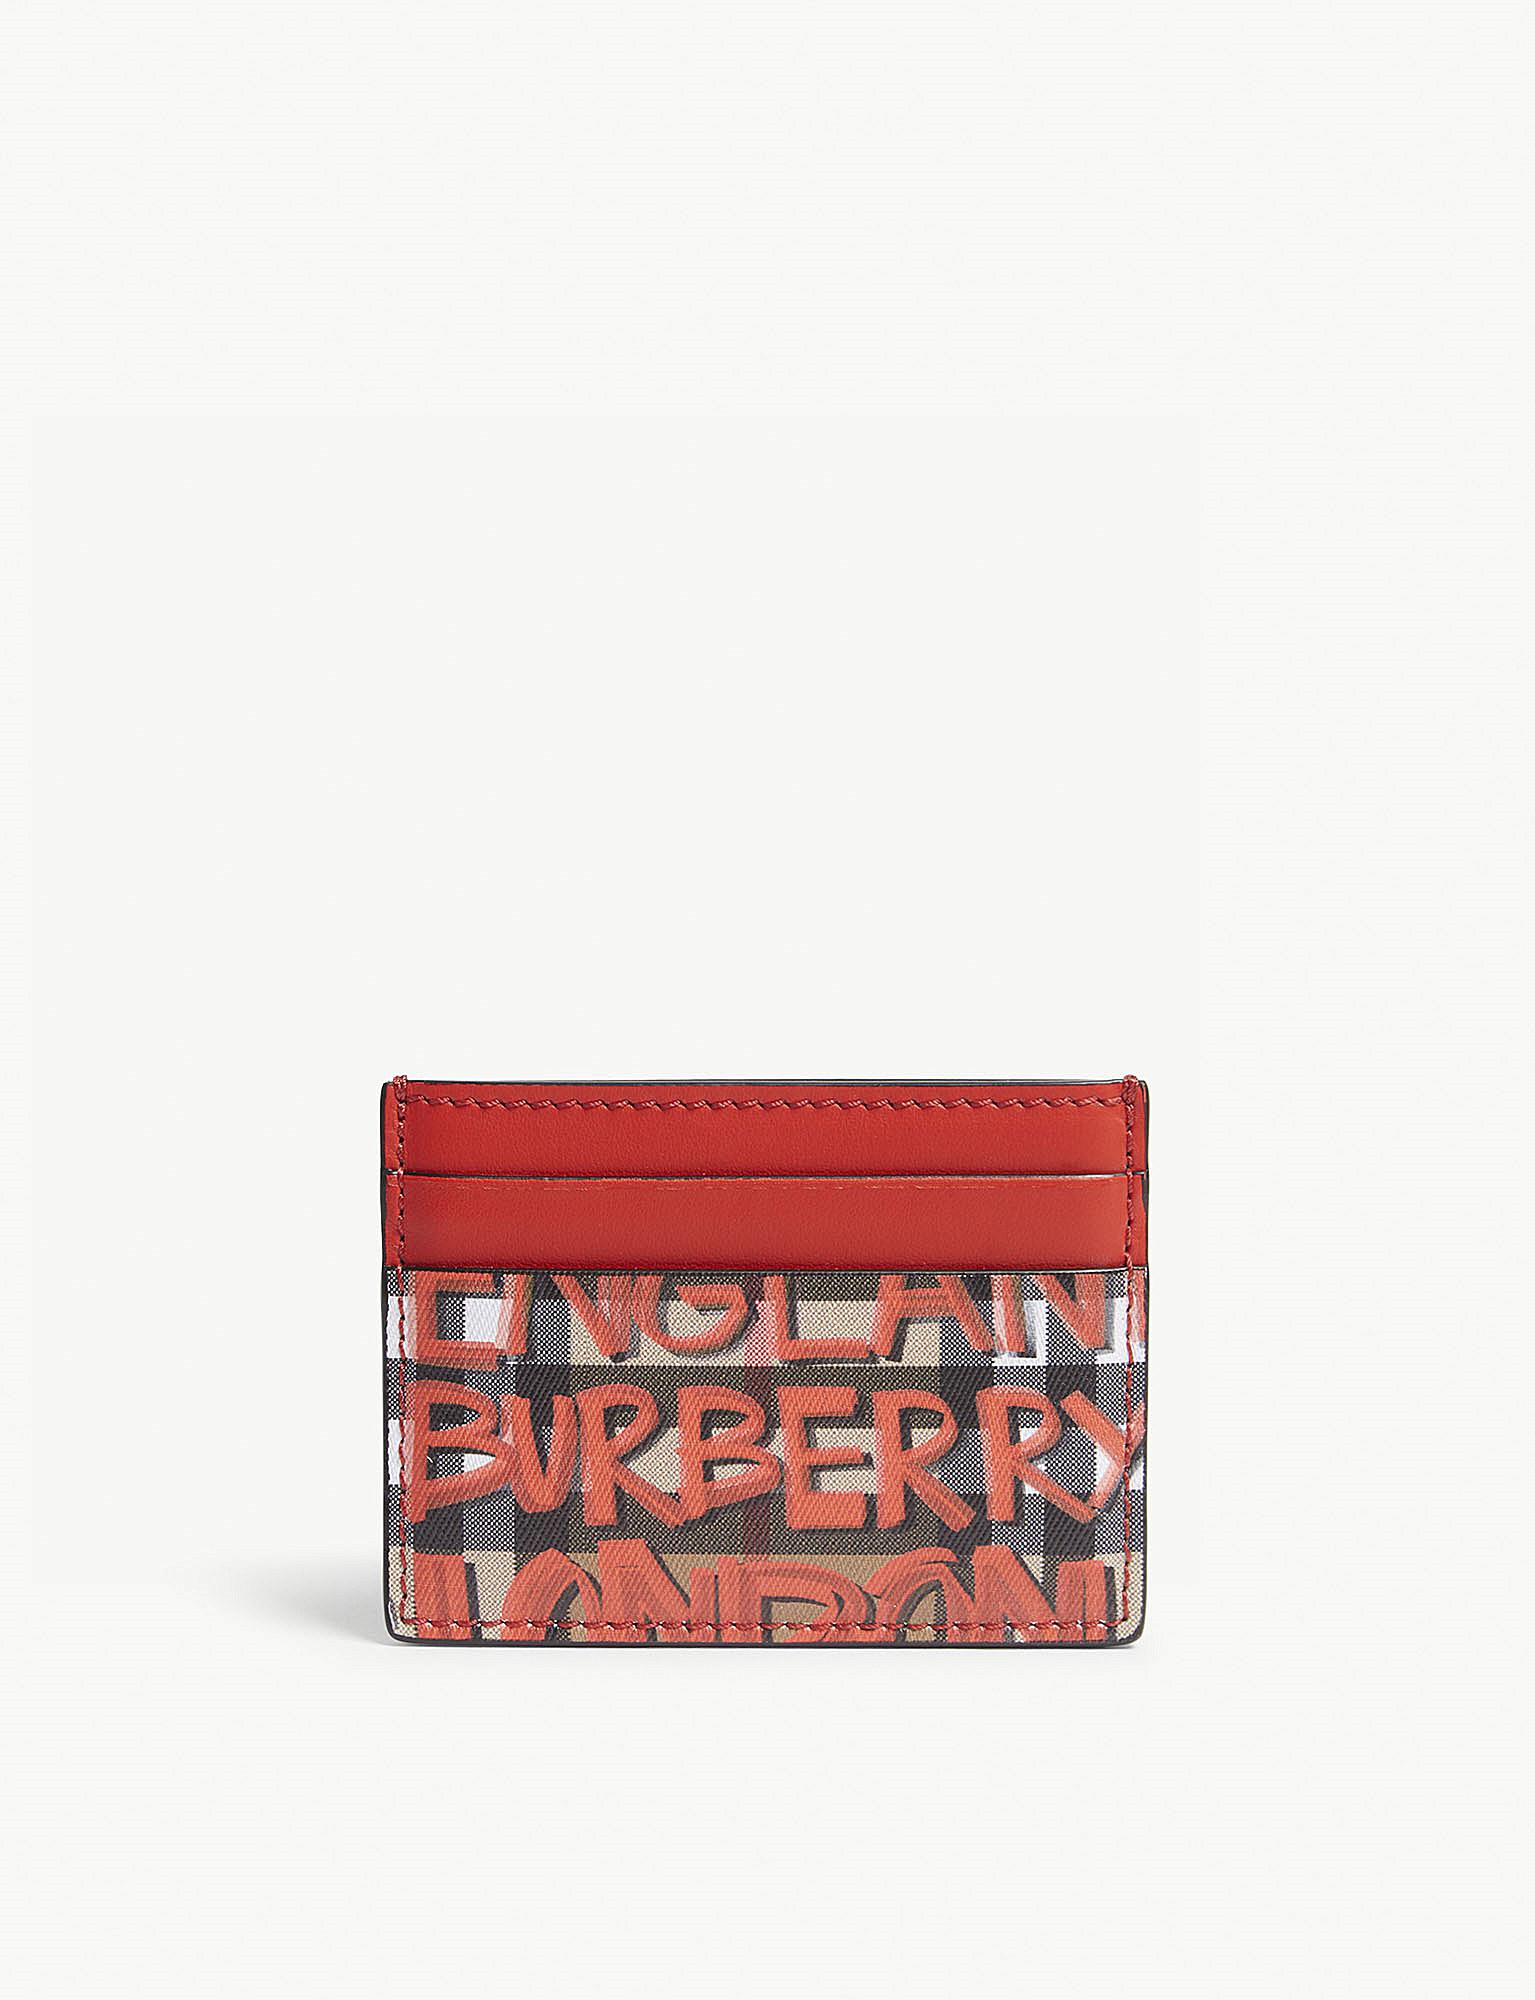 Droop svinge væv Burberry Red Check Graffiti Vintage Leather Card Holder - Lyst